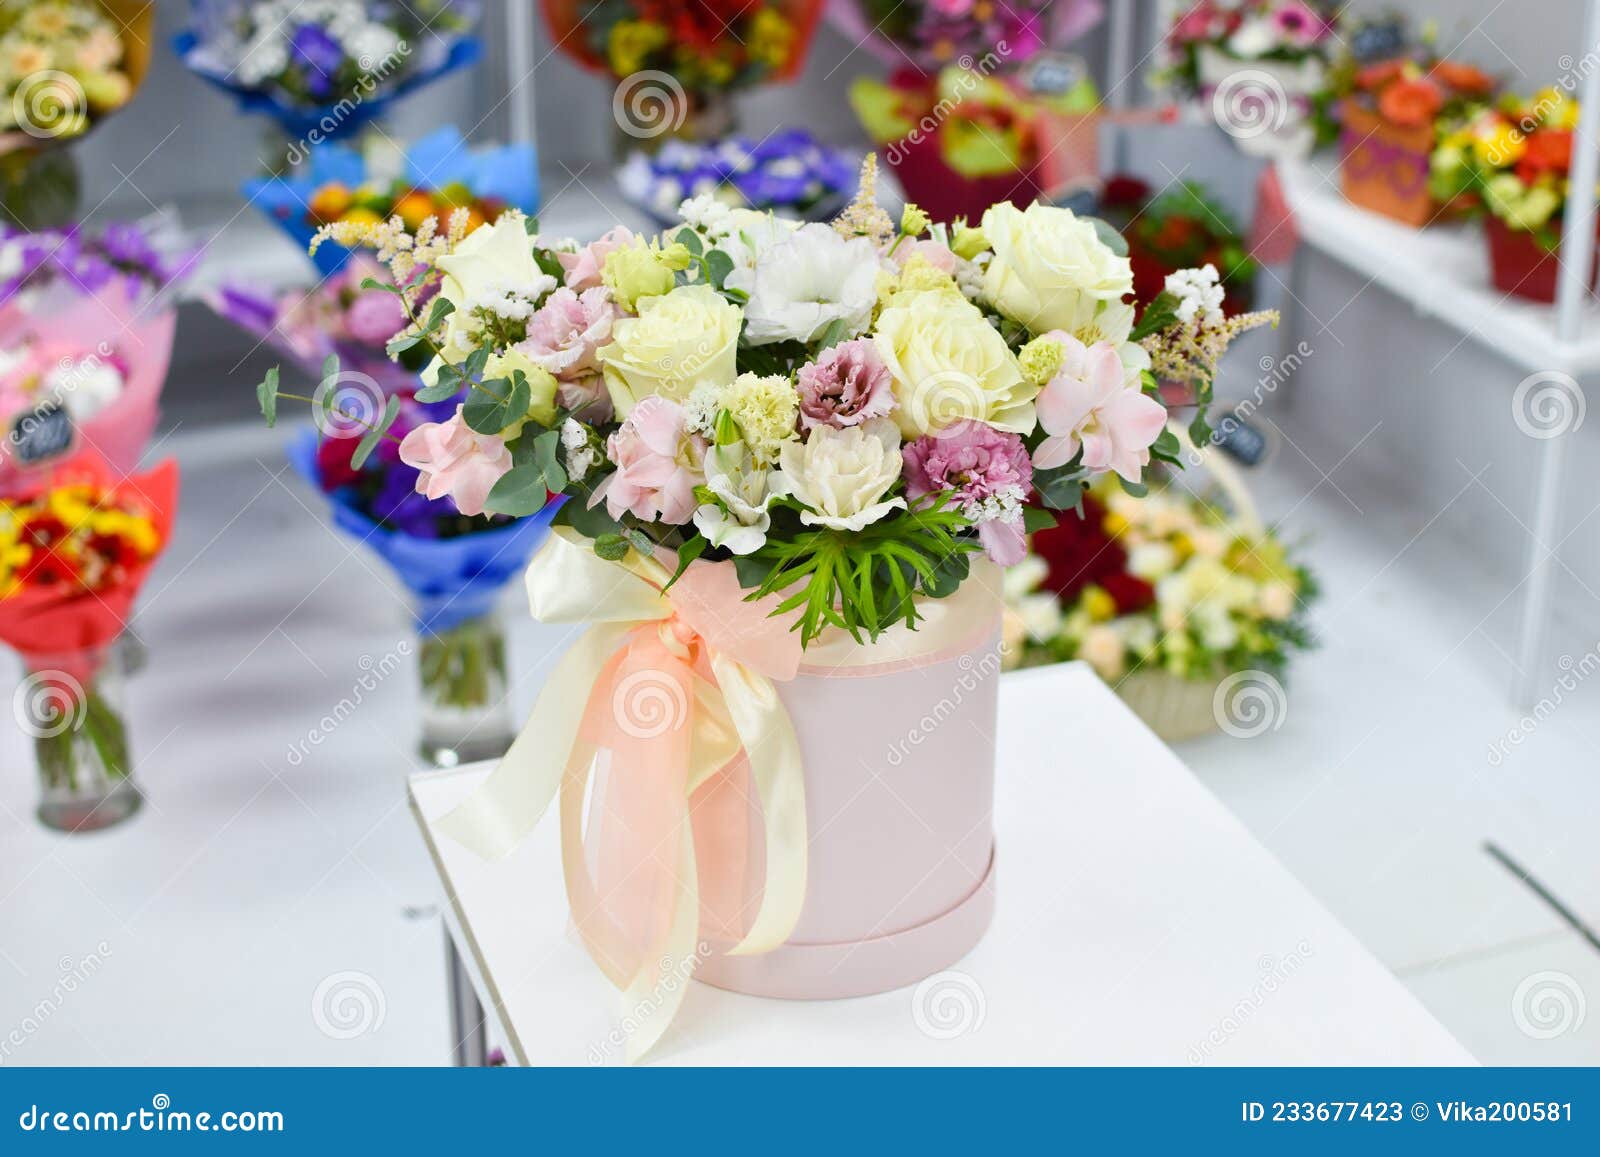 Composition Des Fleurs Dans Une Boîte Sur La Table. Livraison De Fleurs  Fraîches En Ligne. Commerce De Fleurs. Image stock - Image du frais,  cadeau: 233677423